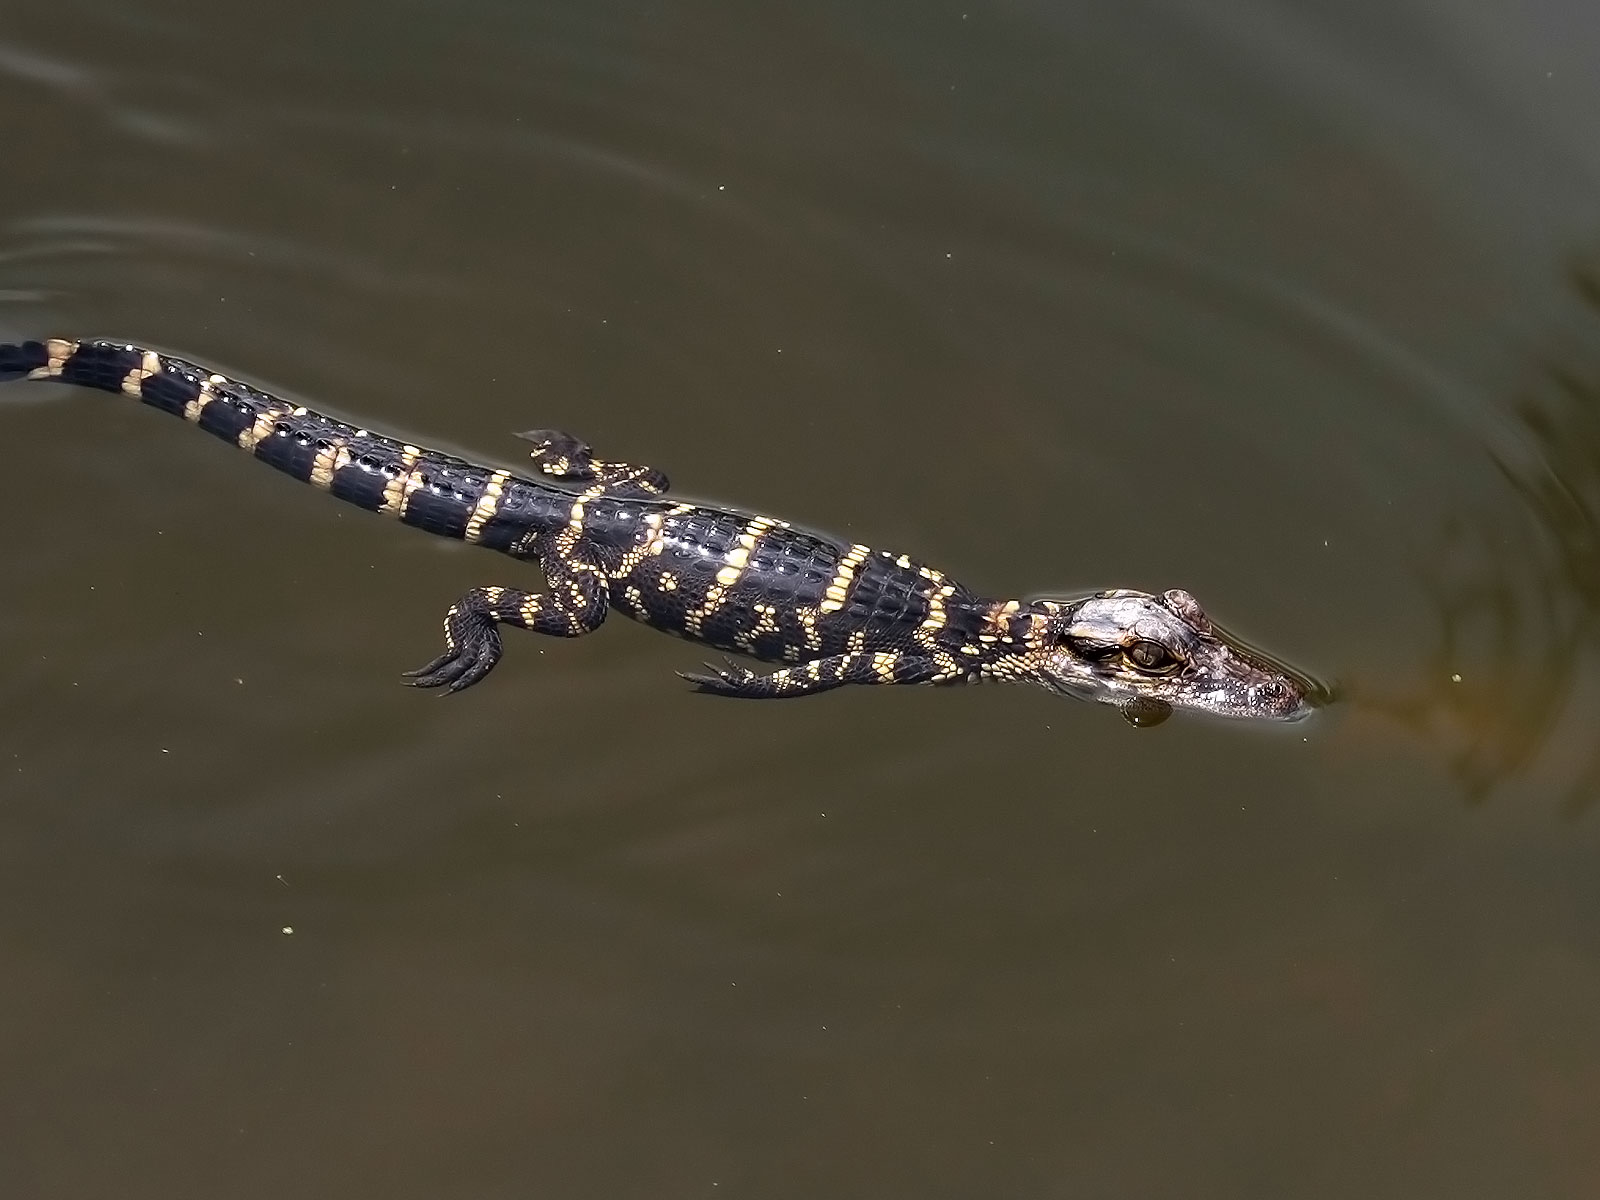 Bébé alligator américain - Alligator mississippiensis